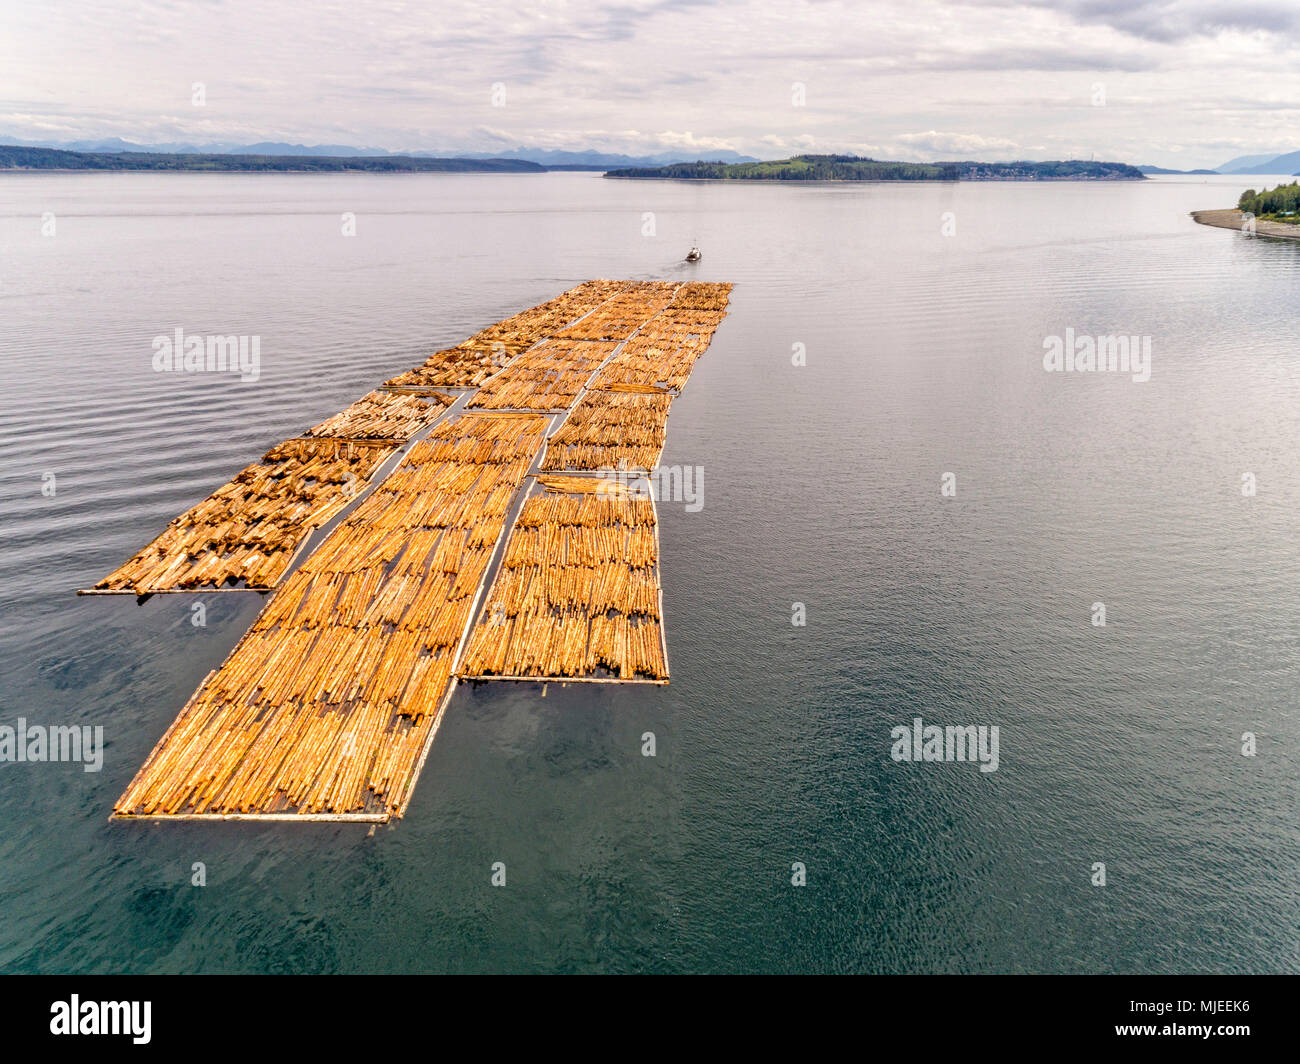 Schlepper abschleppen eines grossen Schwimmer von Protokollen aus nördlichen Vancouver Island, in Richtung Kormoran Insel, und Johnstone Strait Alert Bay, British Columbia, Kanada. Stockfoto